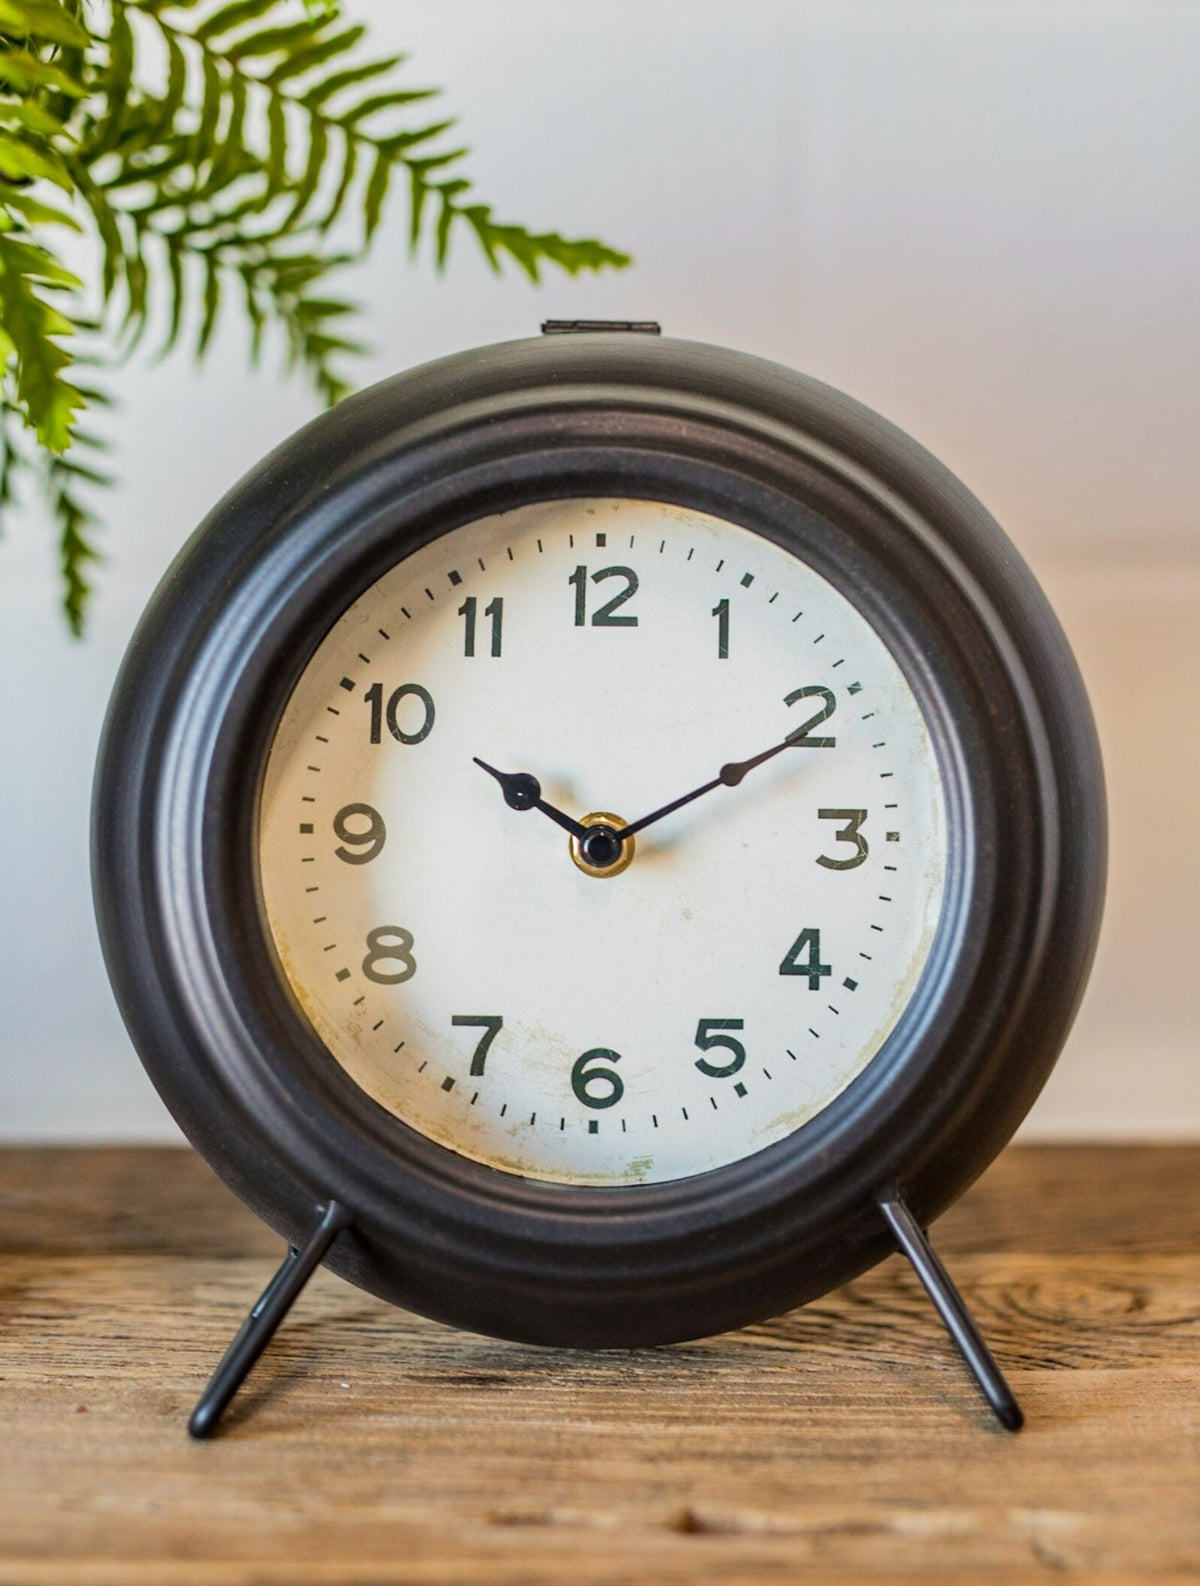 Vintage-Inspired Metal Mantel Clock